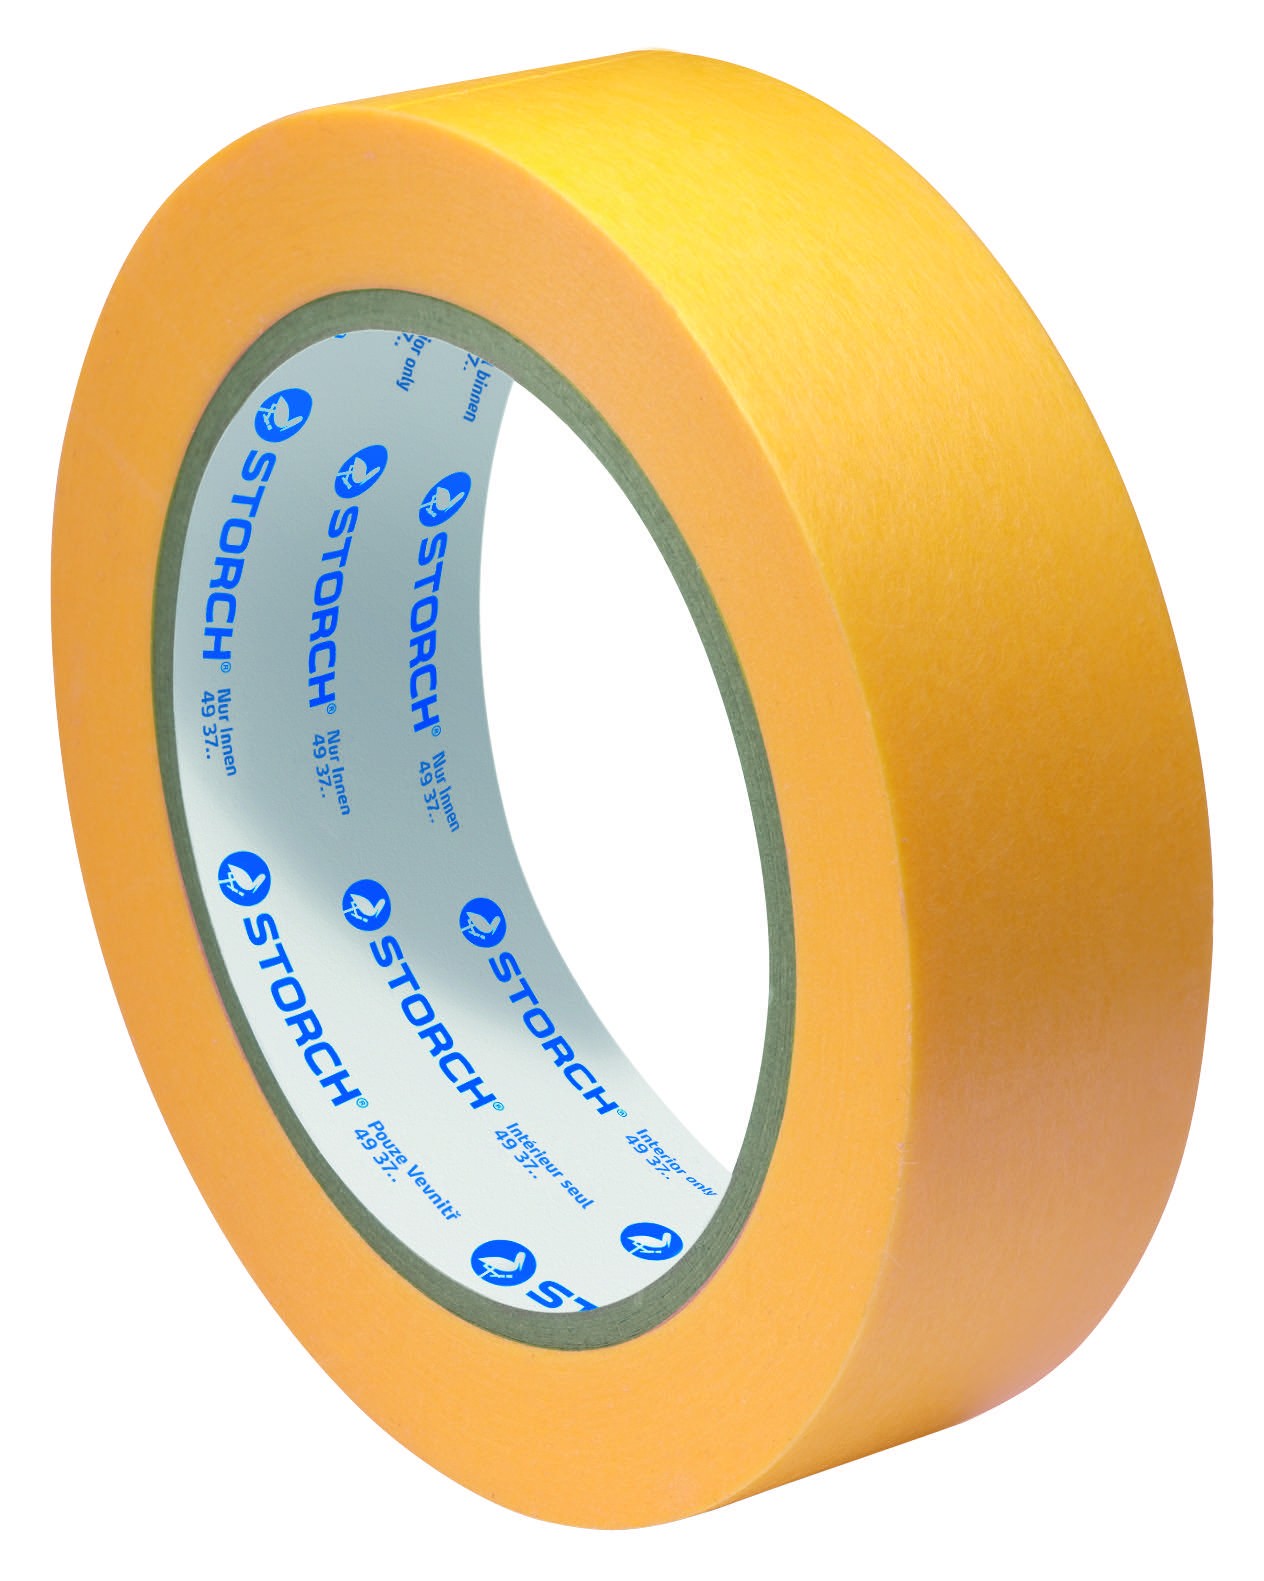 STORCH EASYpaper Das Goldene Papierklebeband für Farben und Lacke (Innen) -Spezial- 19mm / 50m